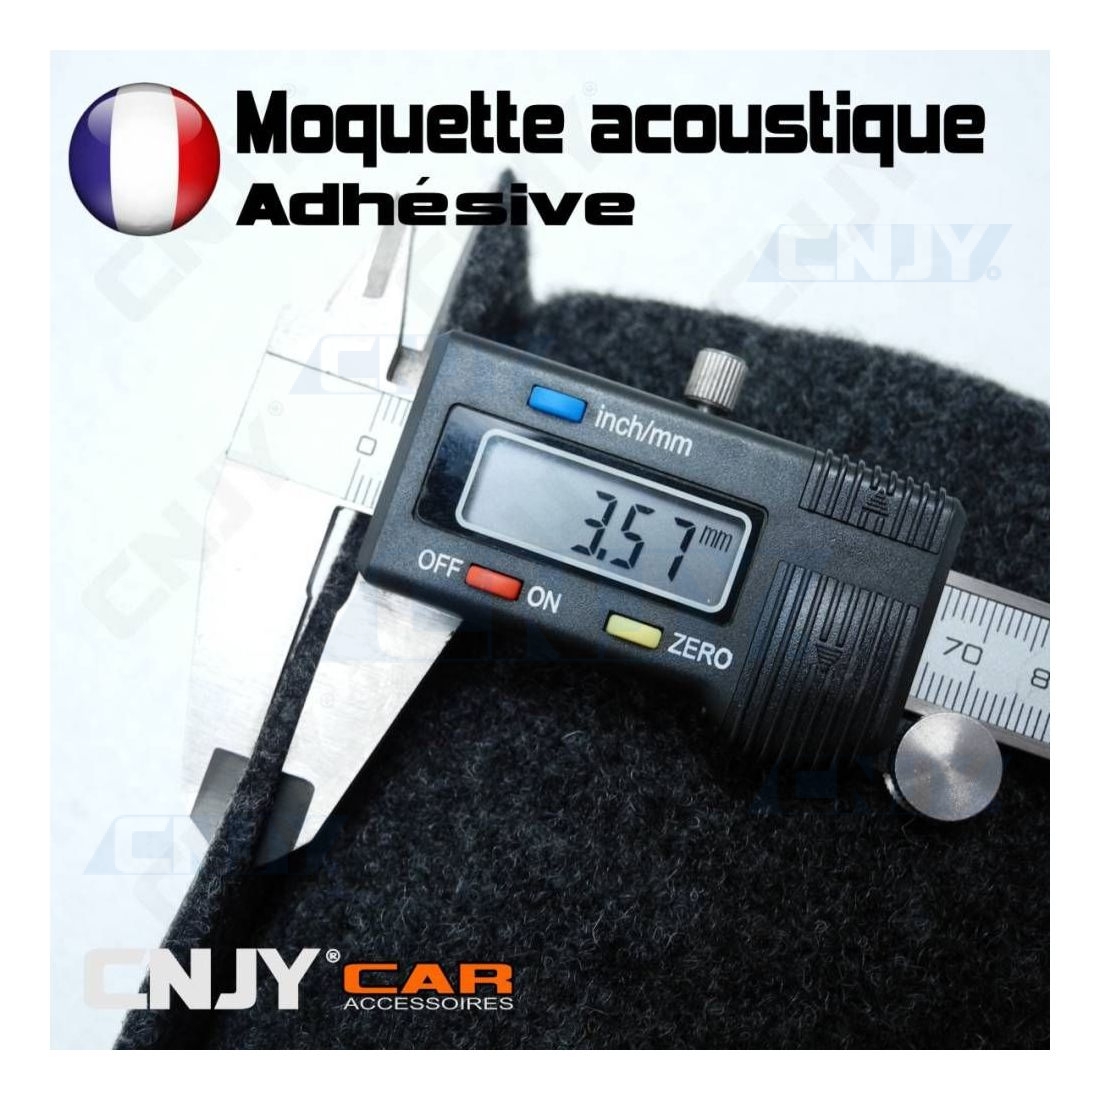 Moquette acoustique adhésive anthracite pour sellerie auto camping car  recouvrement et capitonnage automobile hifi en rouleau.